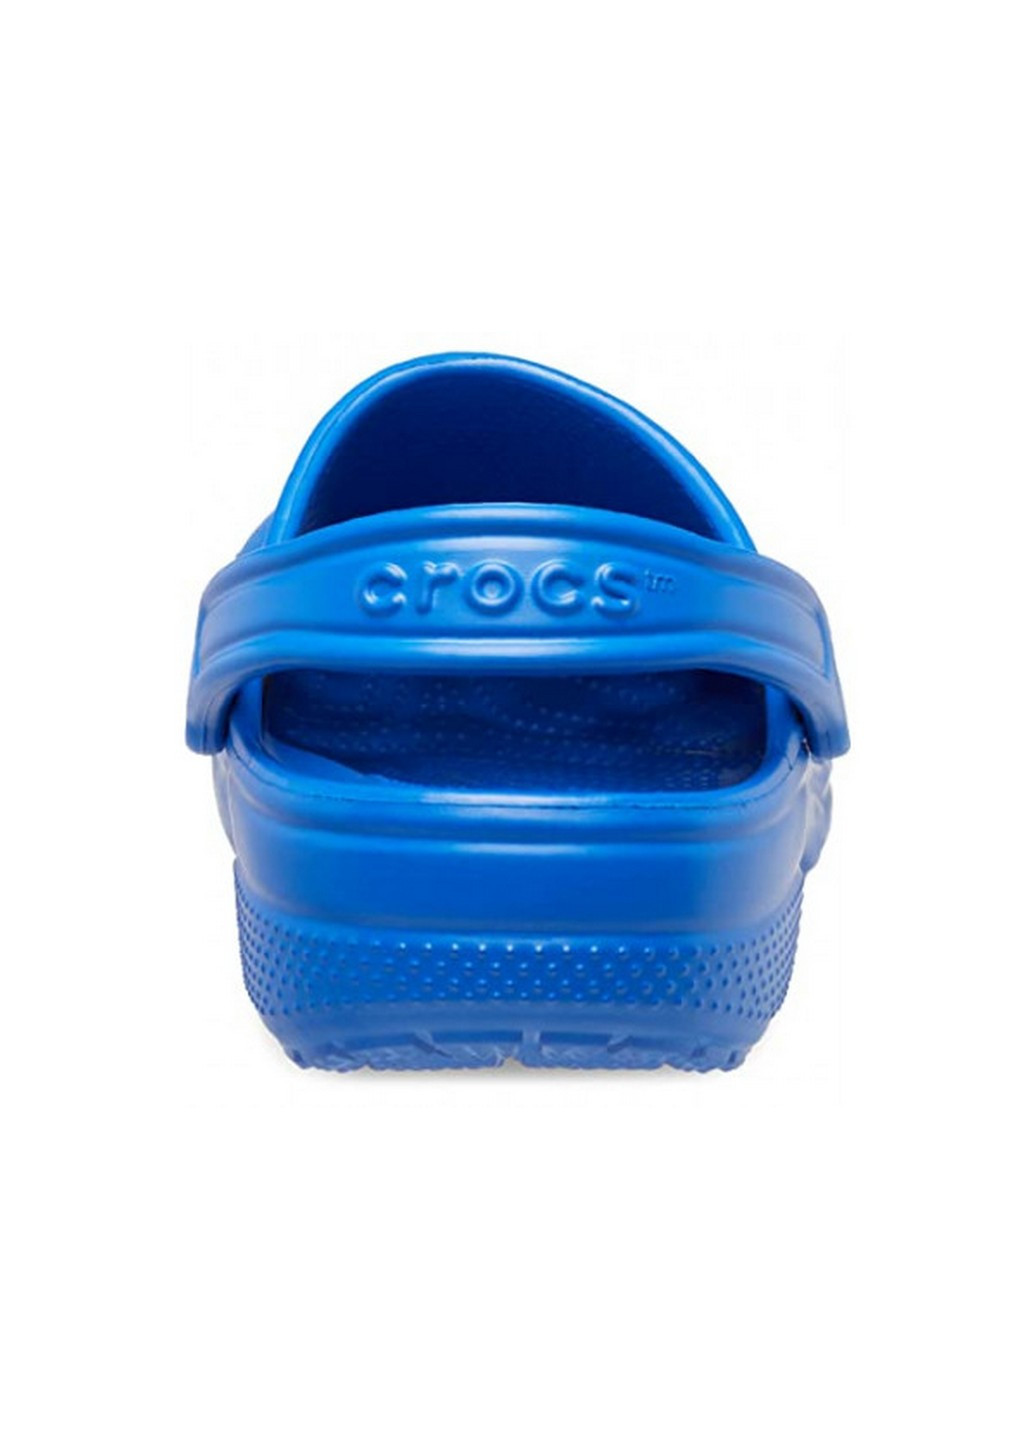 Крокси сабо Crocs classic blue (275095047)